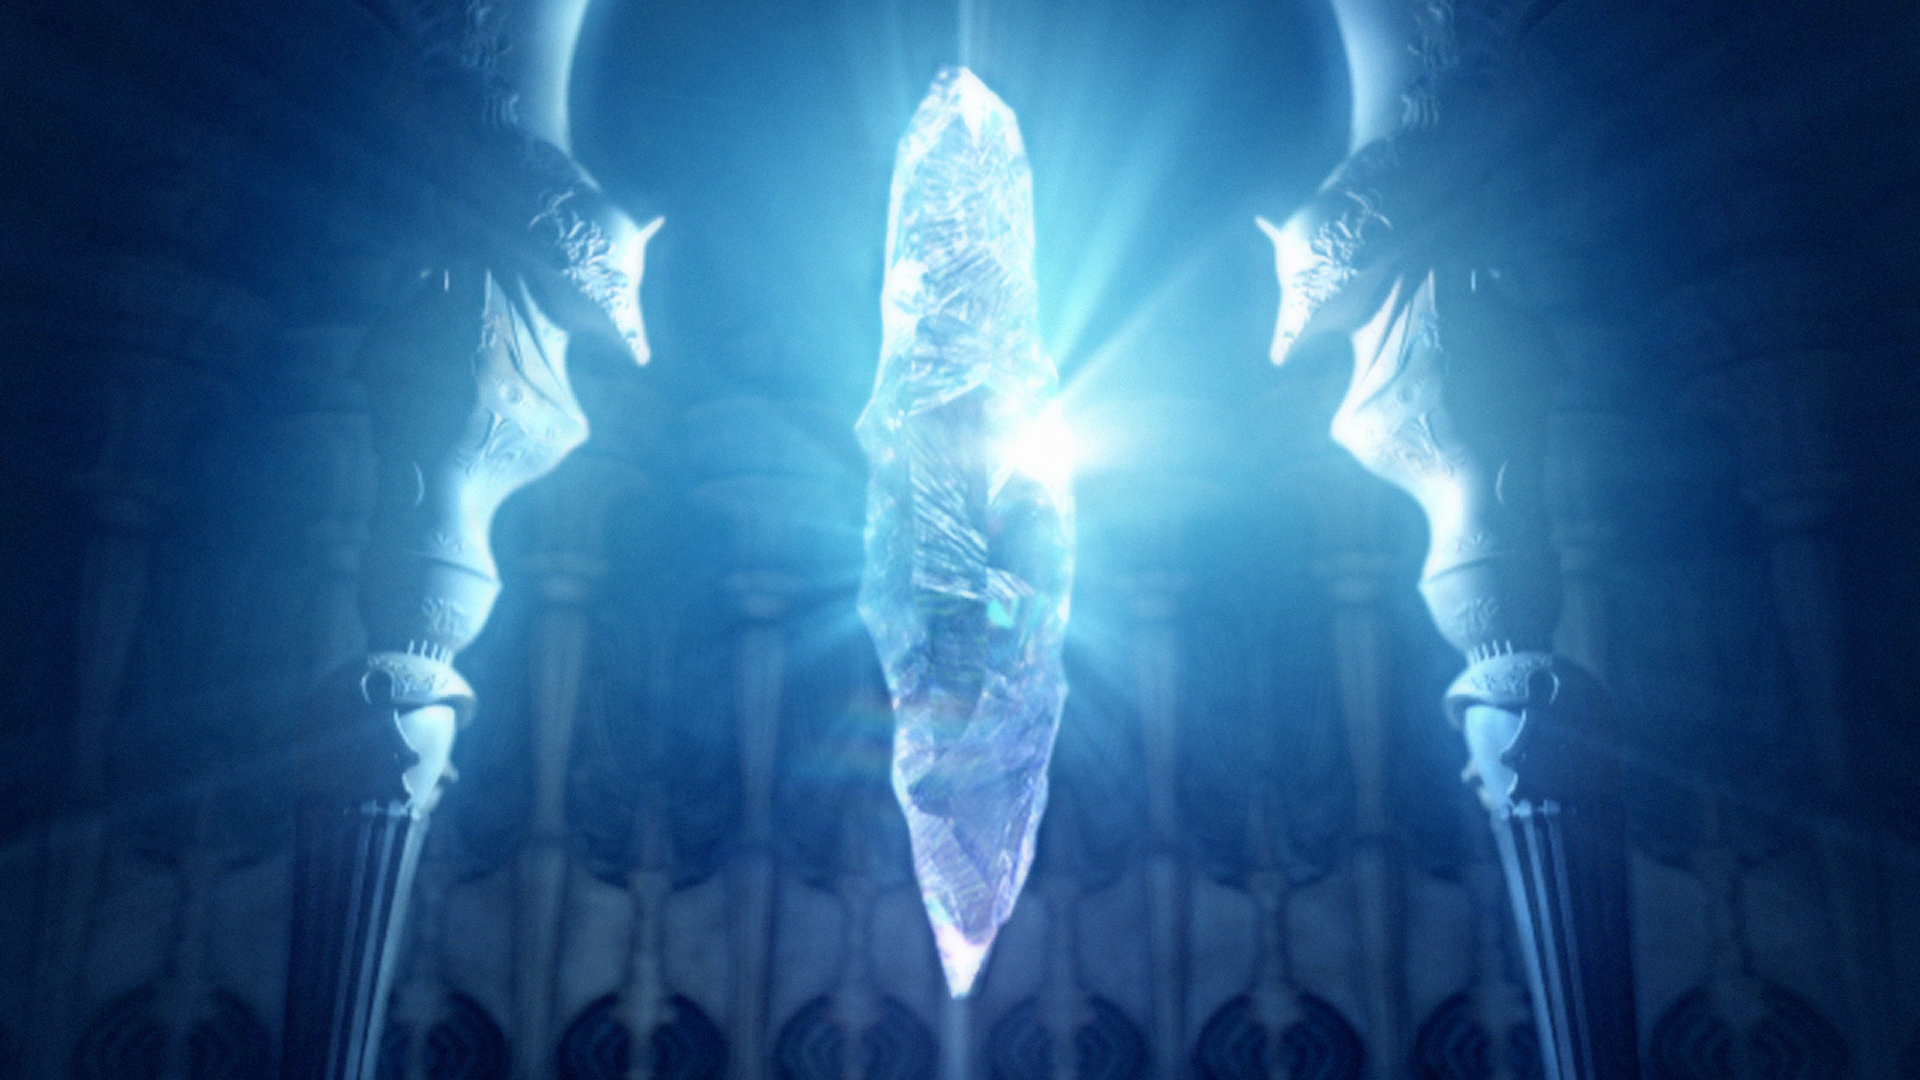 the last crystal